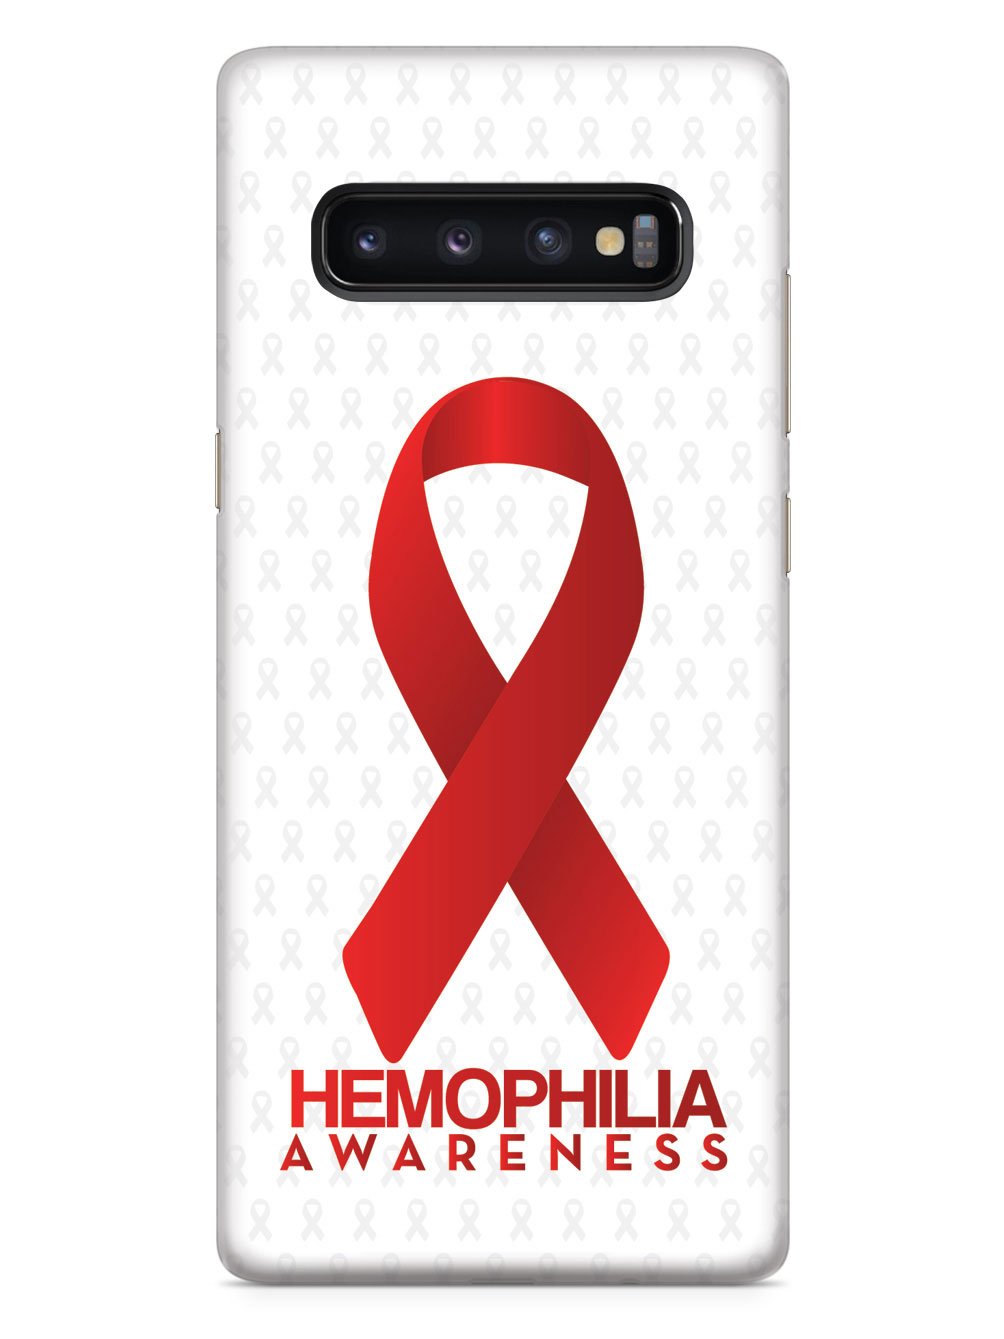 Hemophilia - Awareness Ribbon - White Case